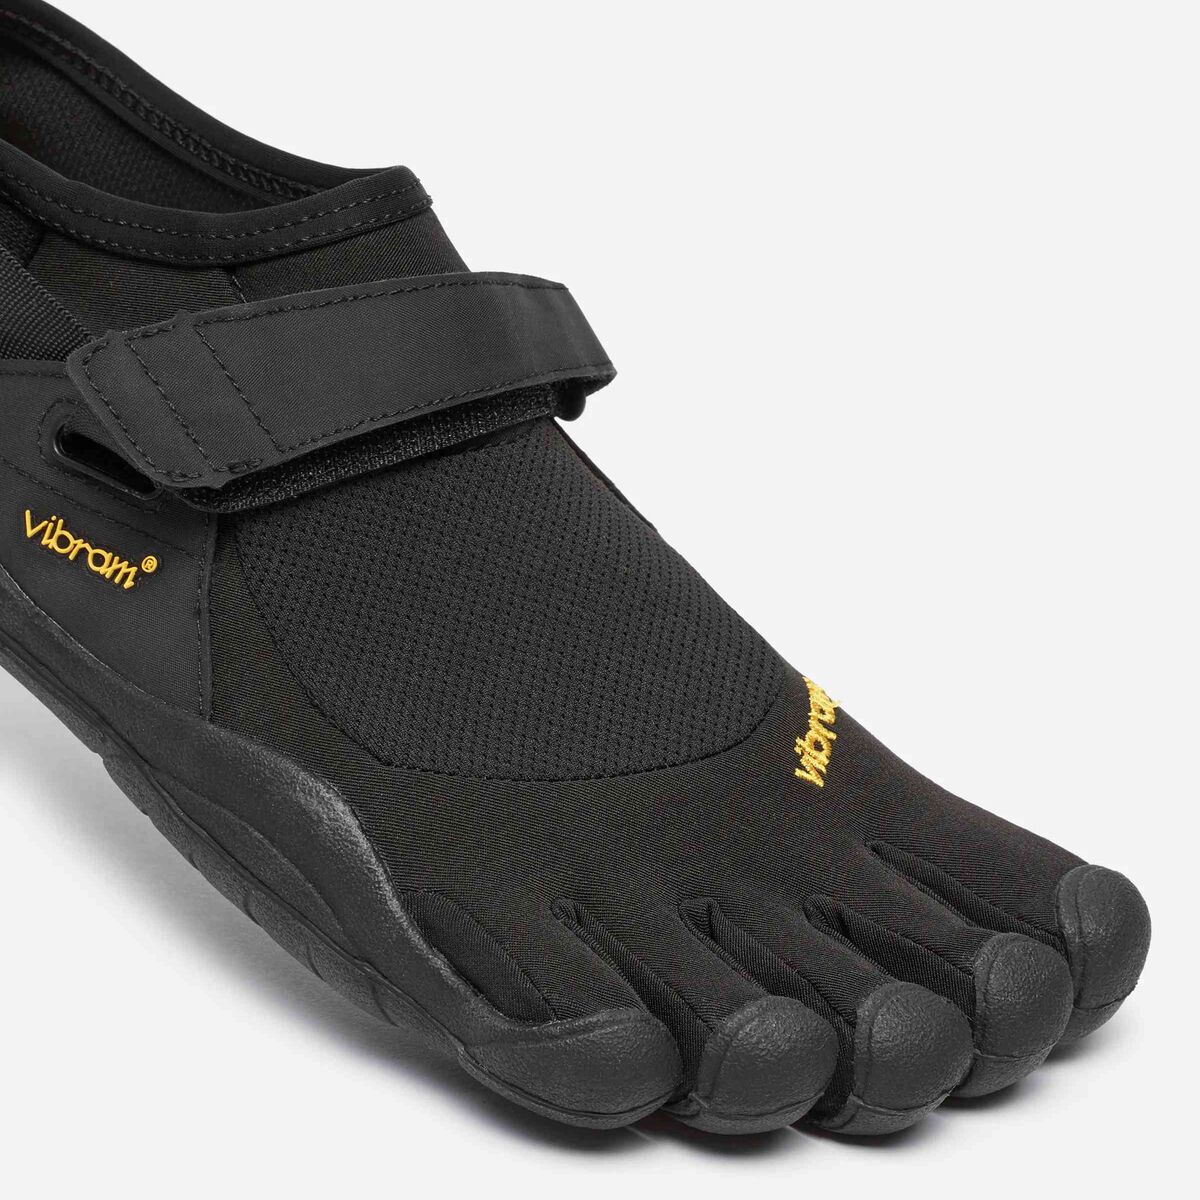  Vibram FiveFingers Men's KSO Barefoot Shoes Black/Black 38 &  Toesock Bundle